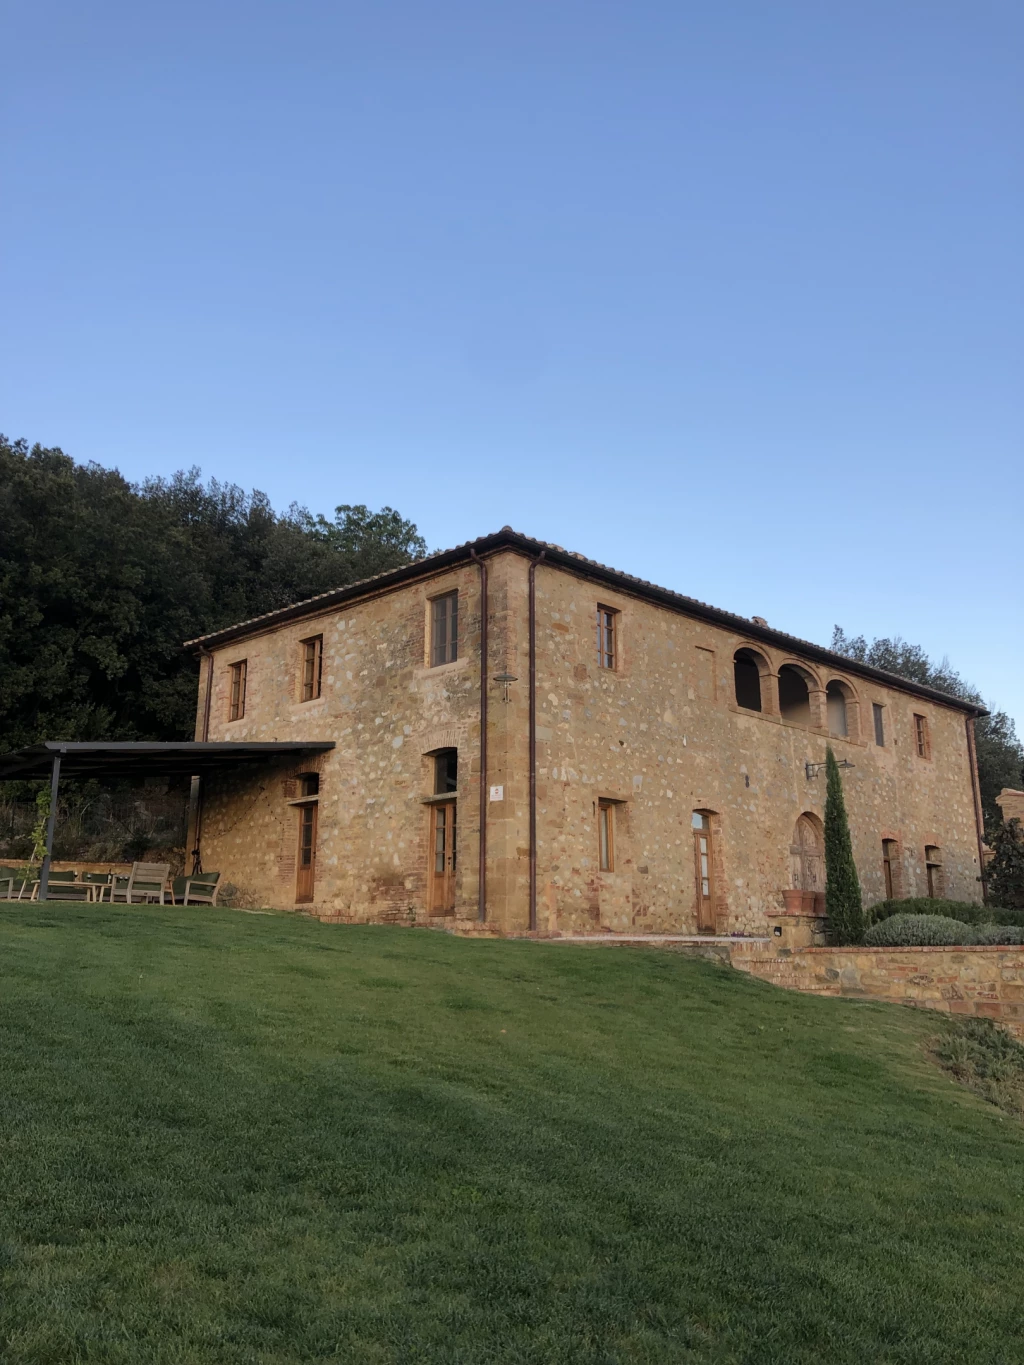 De oude gerenoveerde boerderij Podere Invidia in Trequanda, Toscane